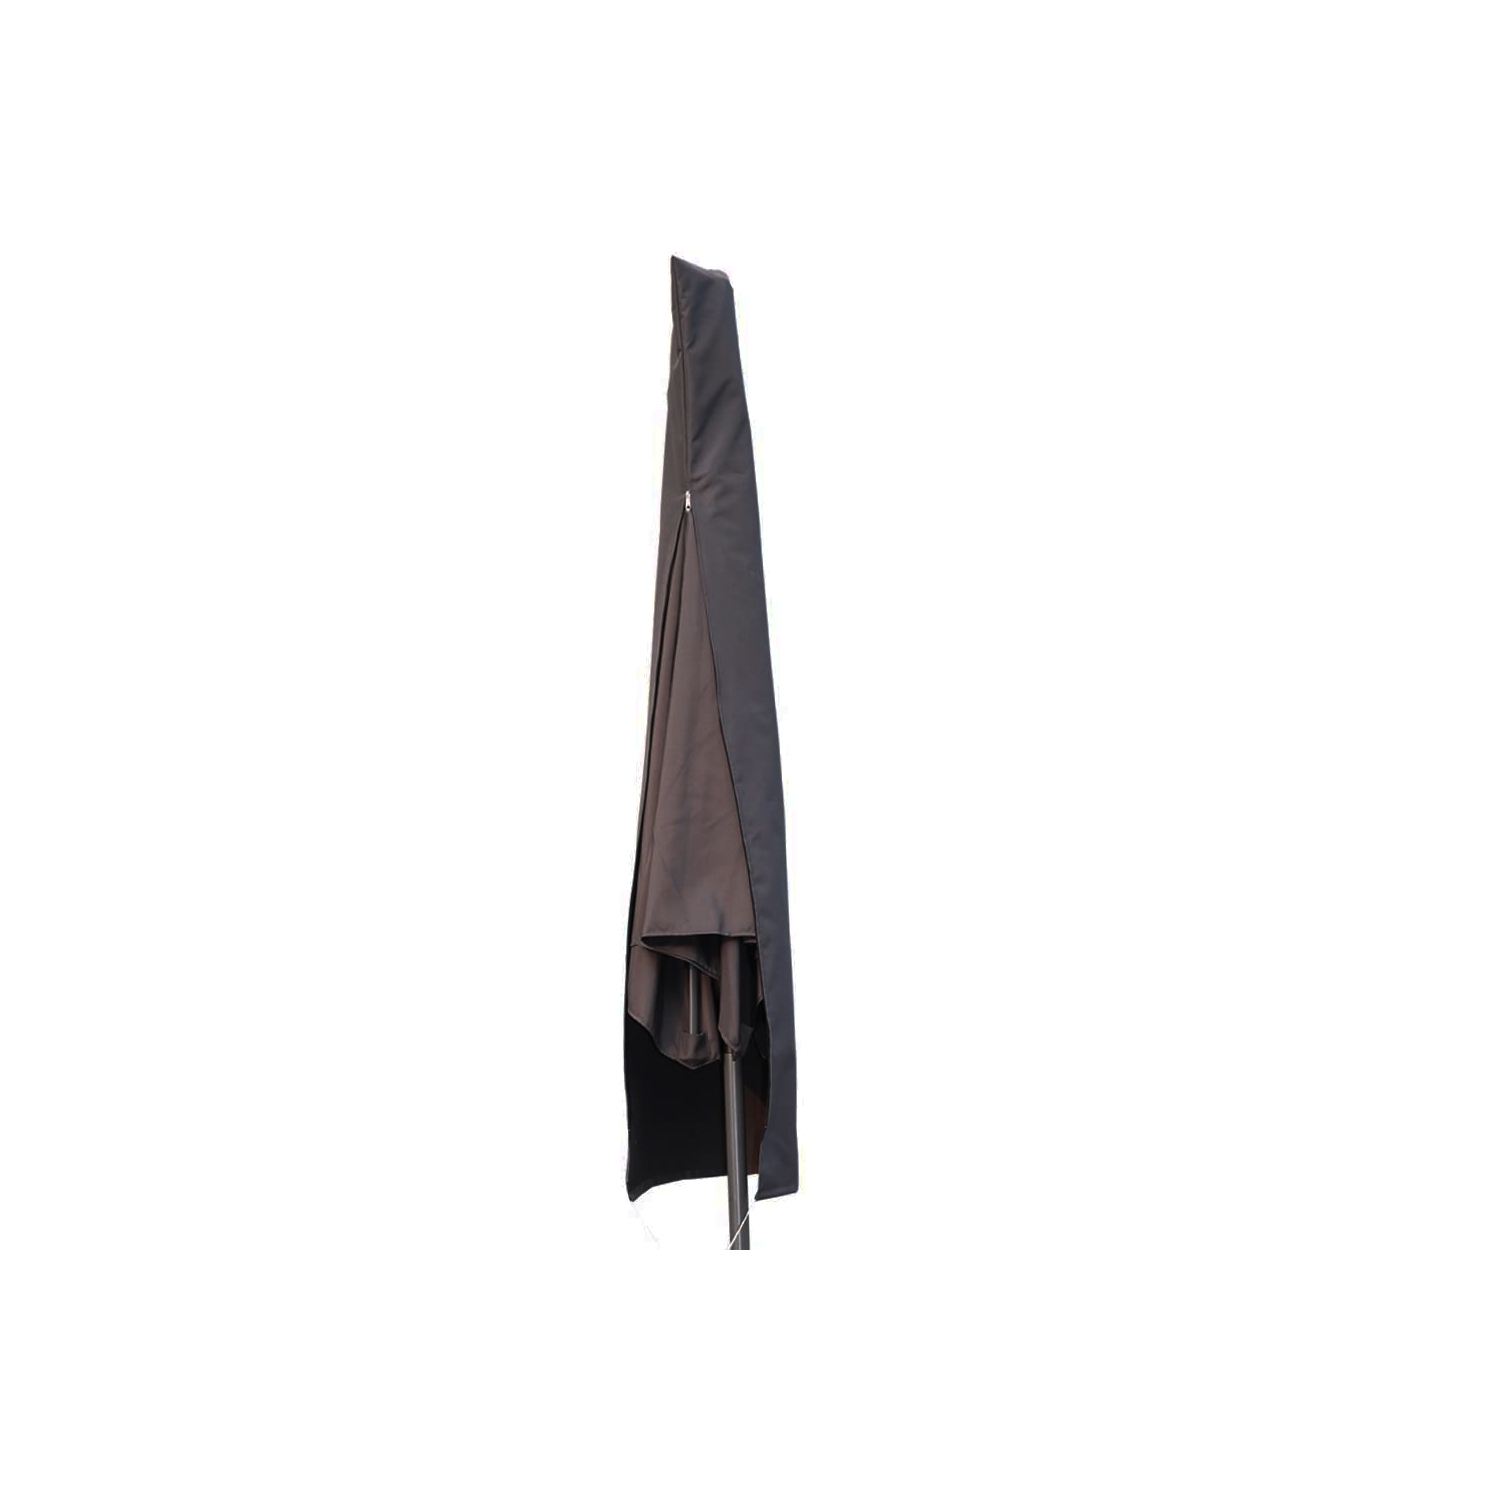 Housse pour parasol figari 150 x 30 x 25 cm